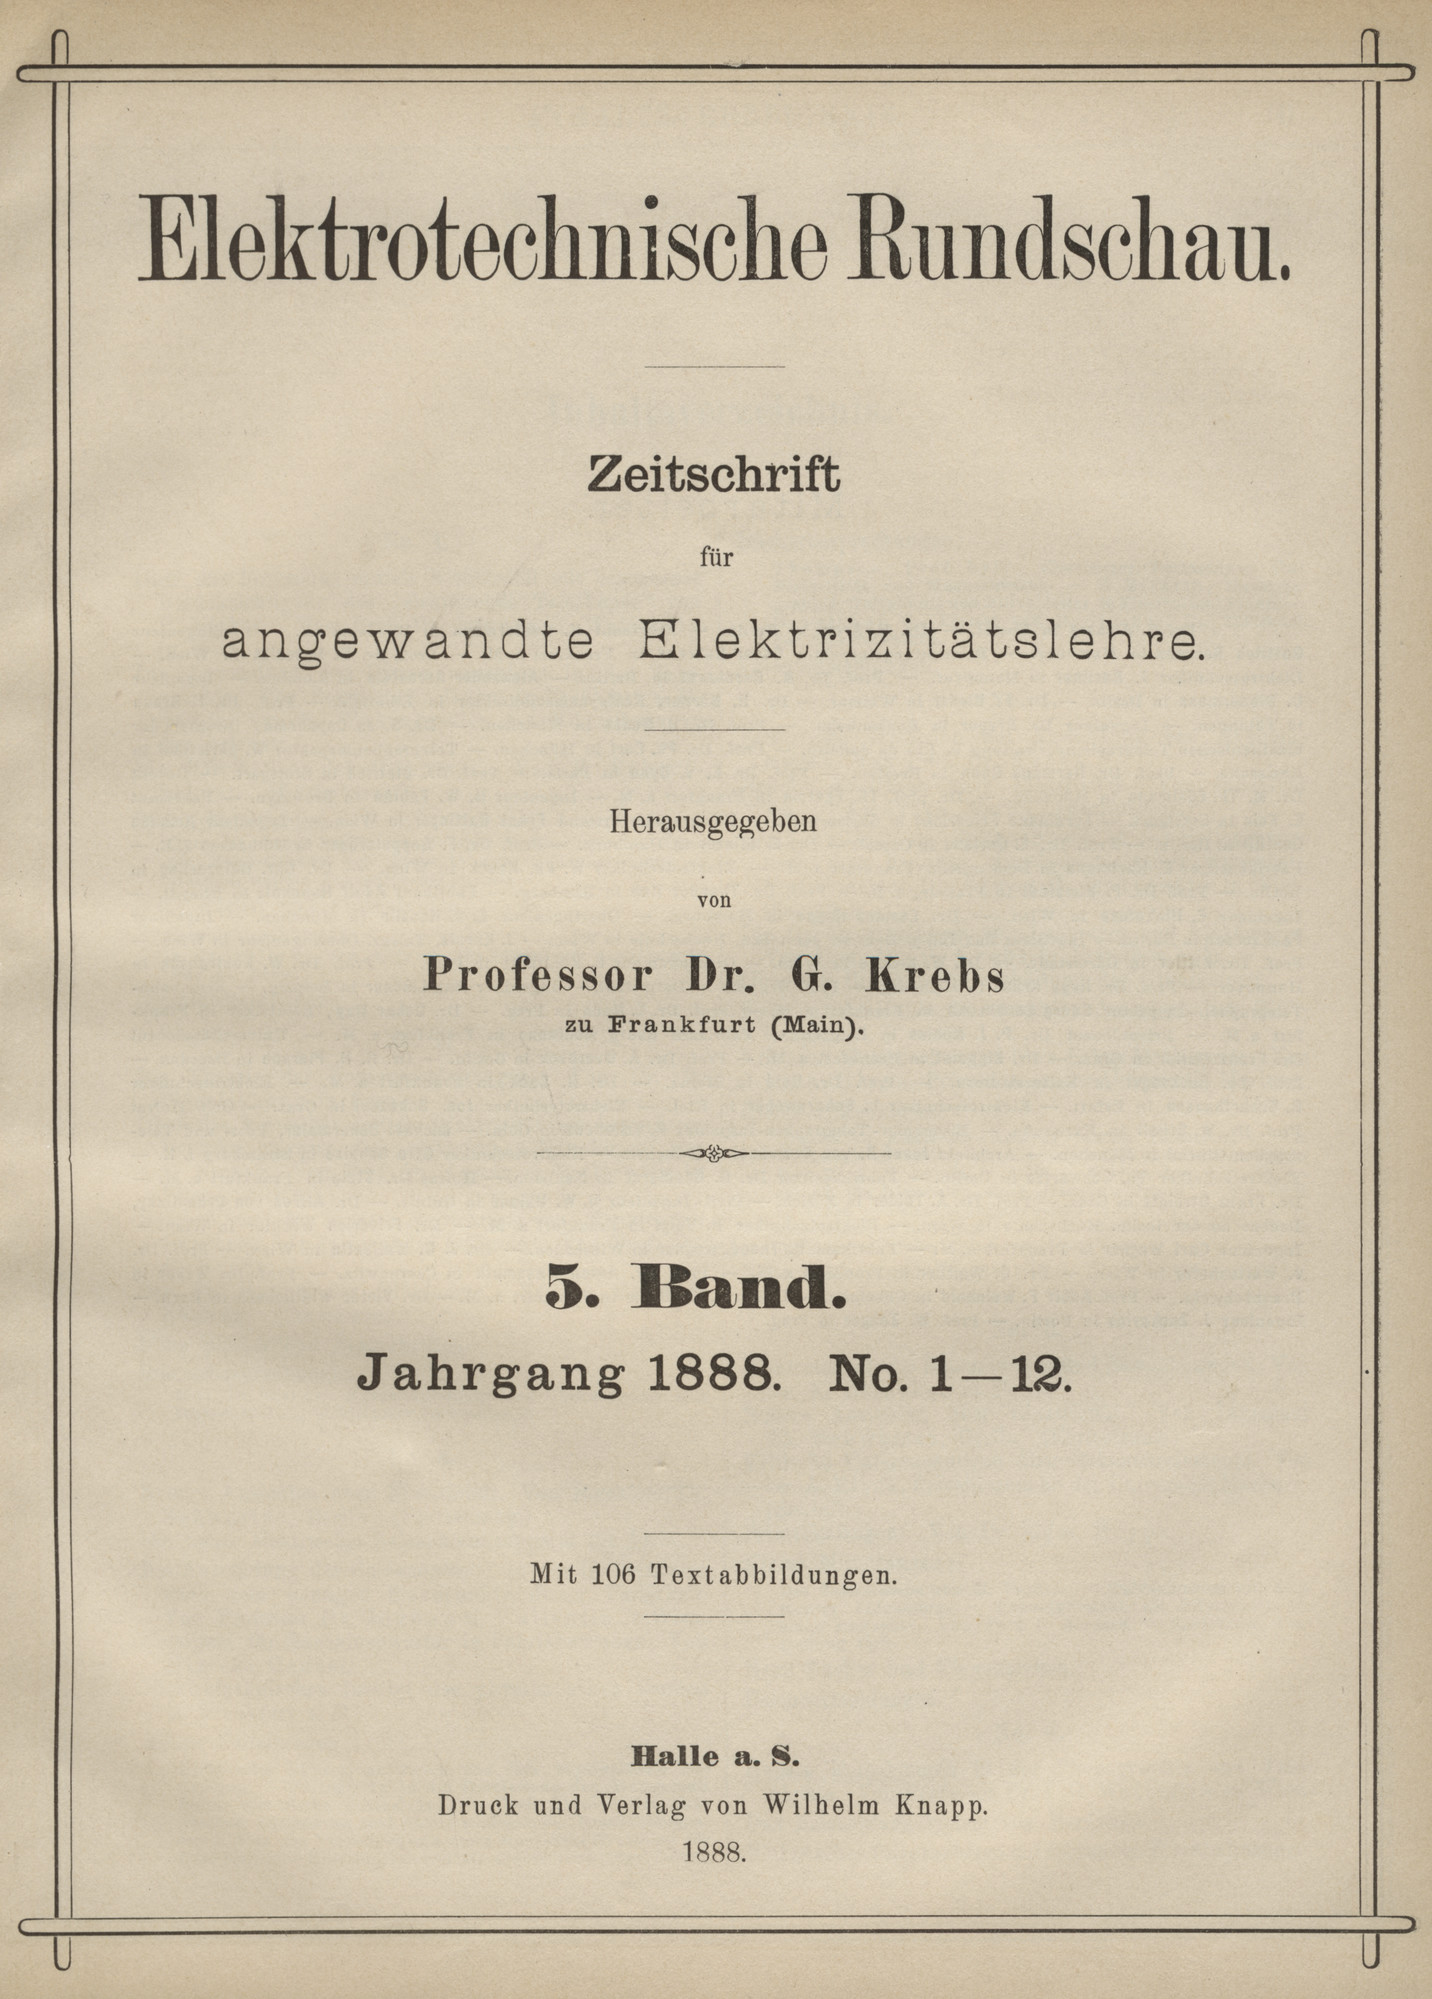 Elektrotechnische Rundschau : Zeitschrift für angewandte Elektrizitätslehre, 1888, Index